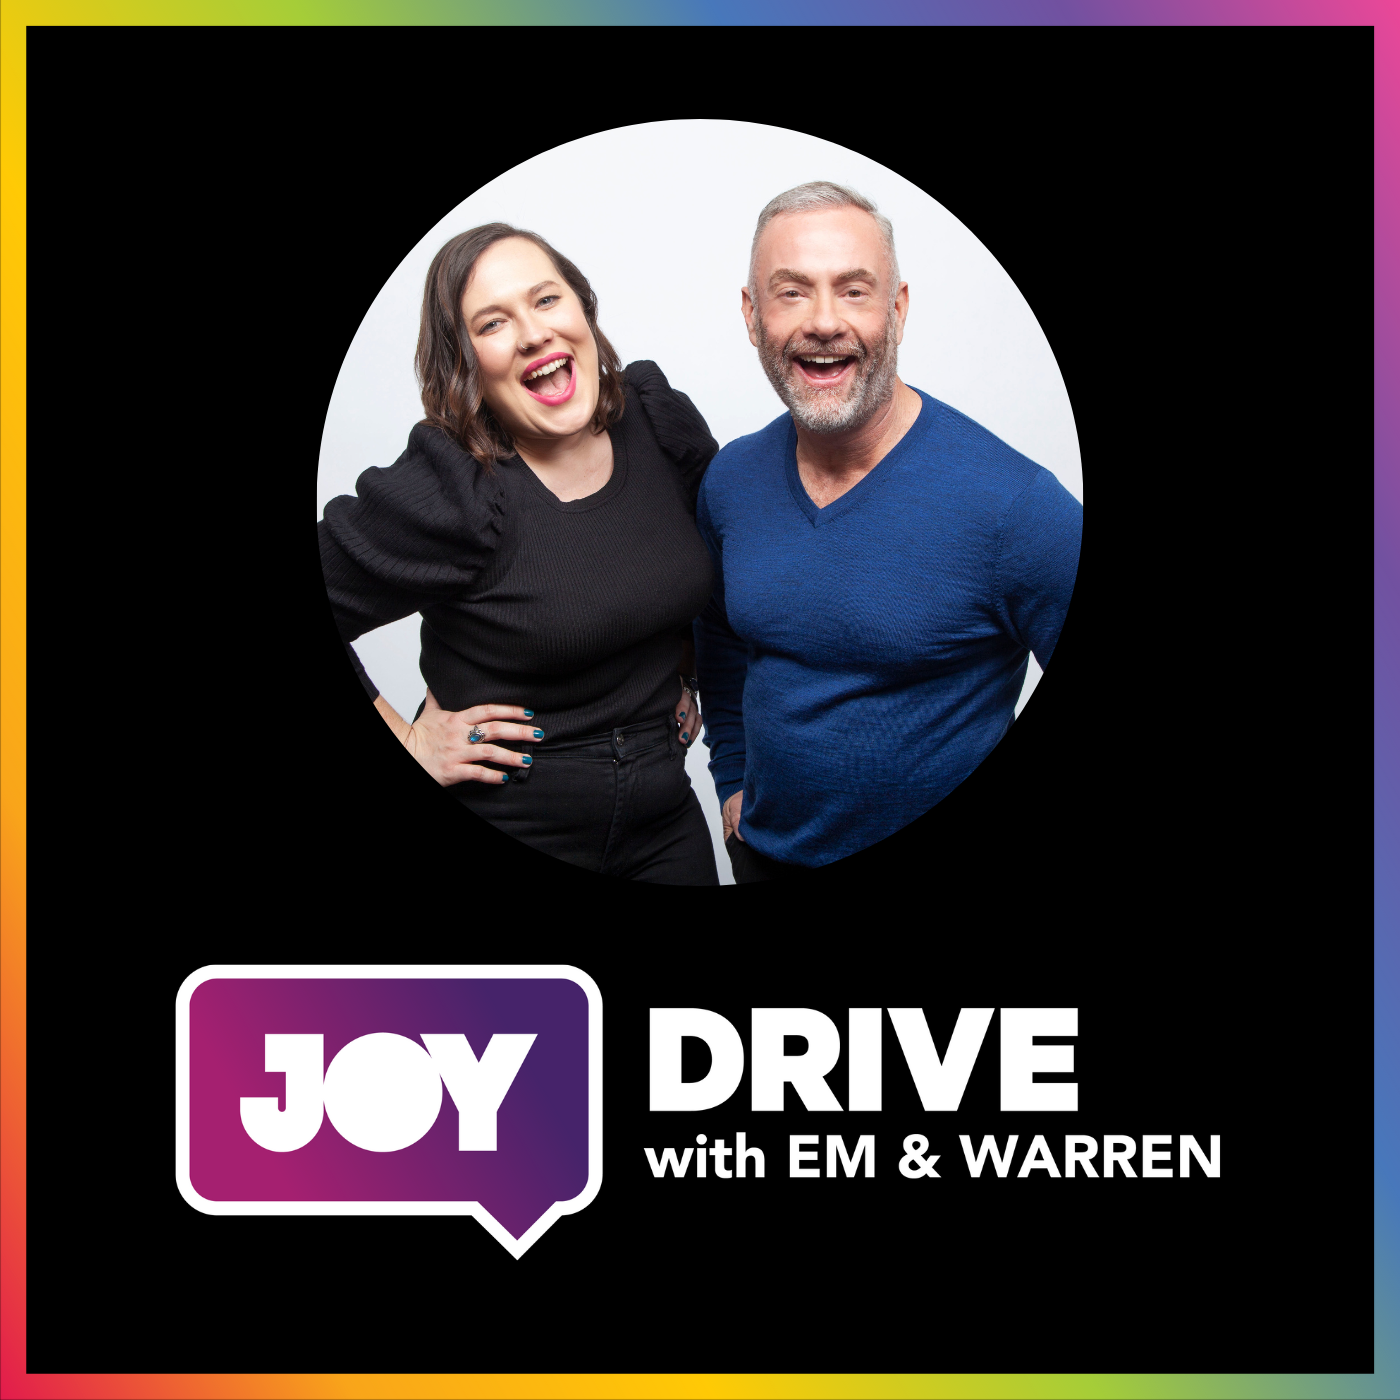 Glen Hare x JOY Drive: Wear It Purple Day